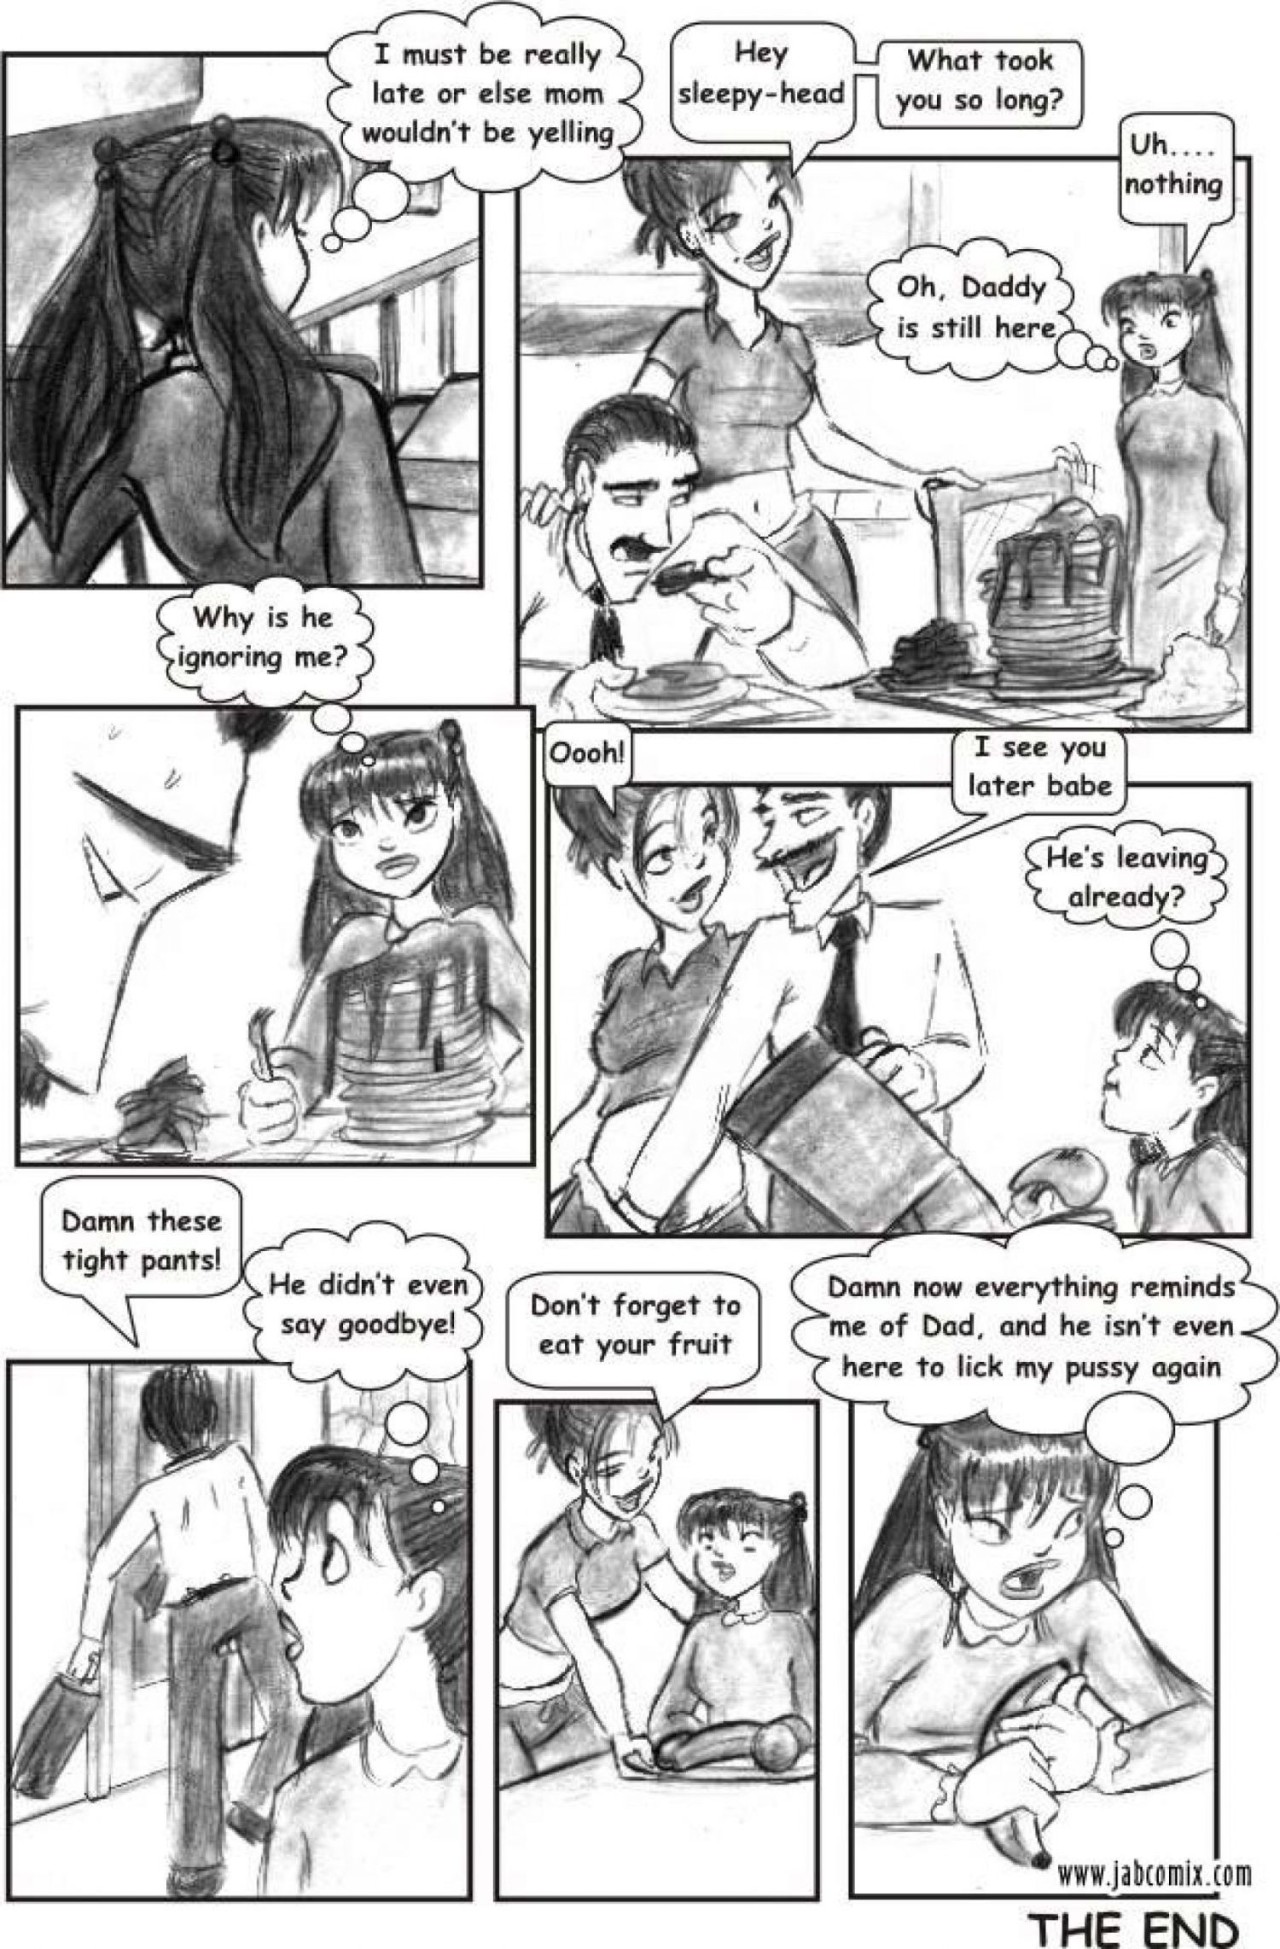 Ay Papi Part 1: Tempt Me Not Porn Comic english 22